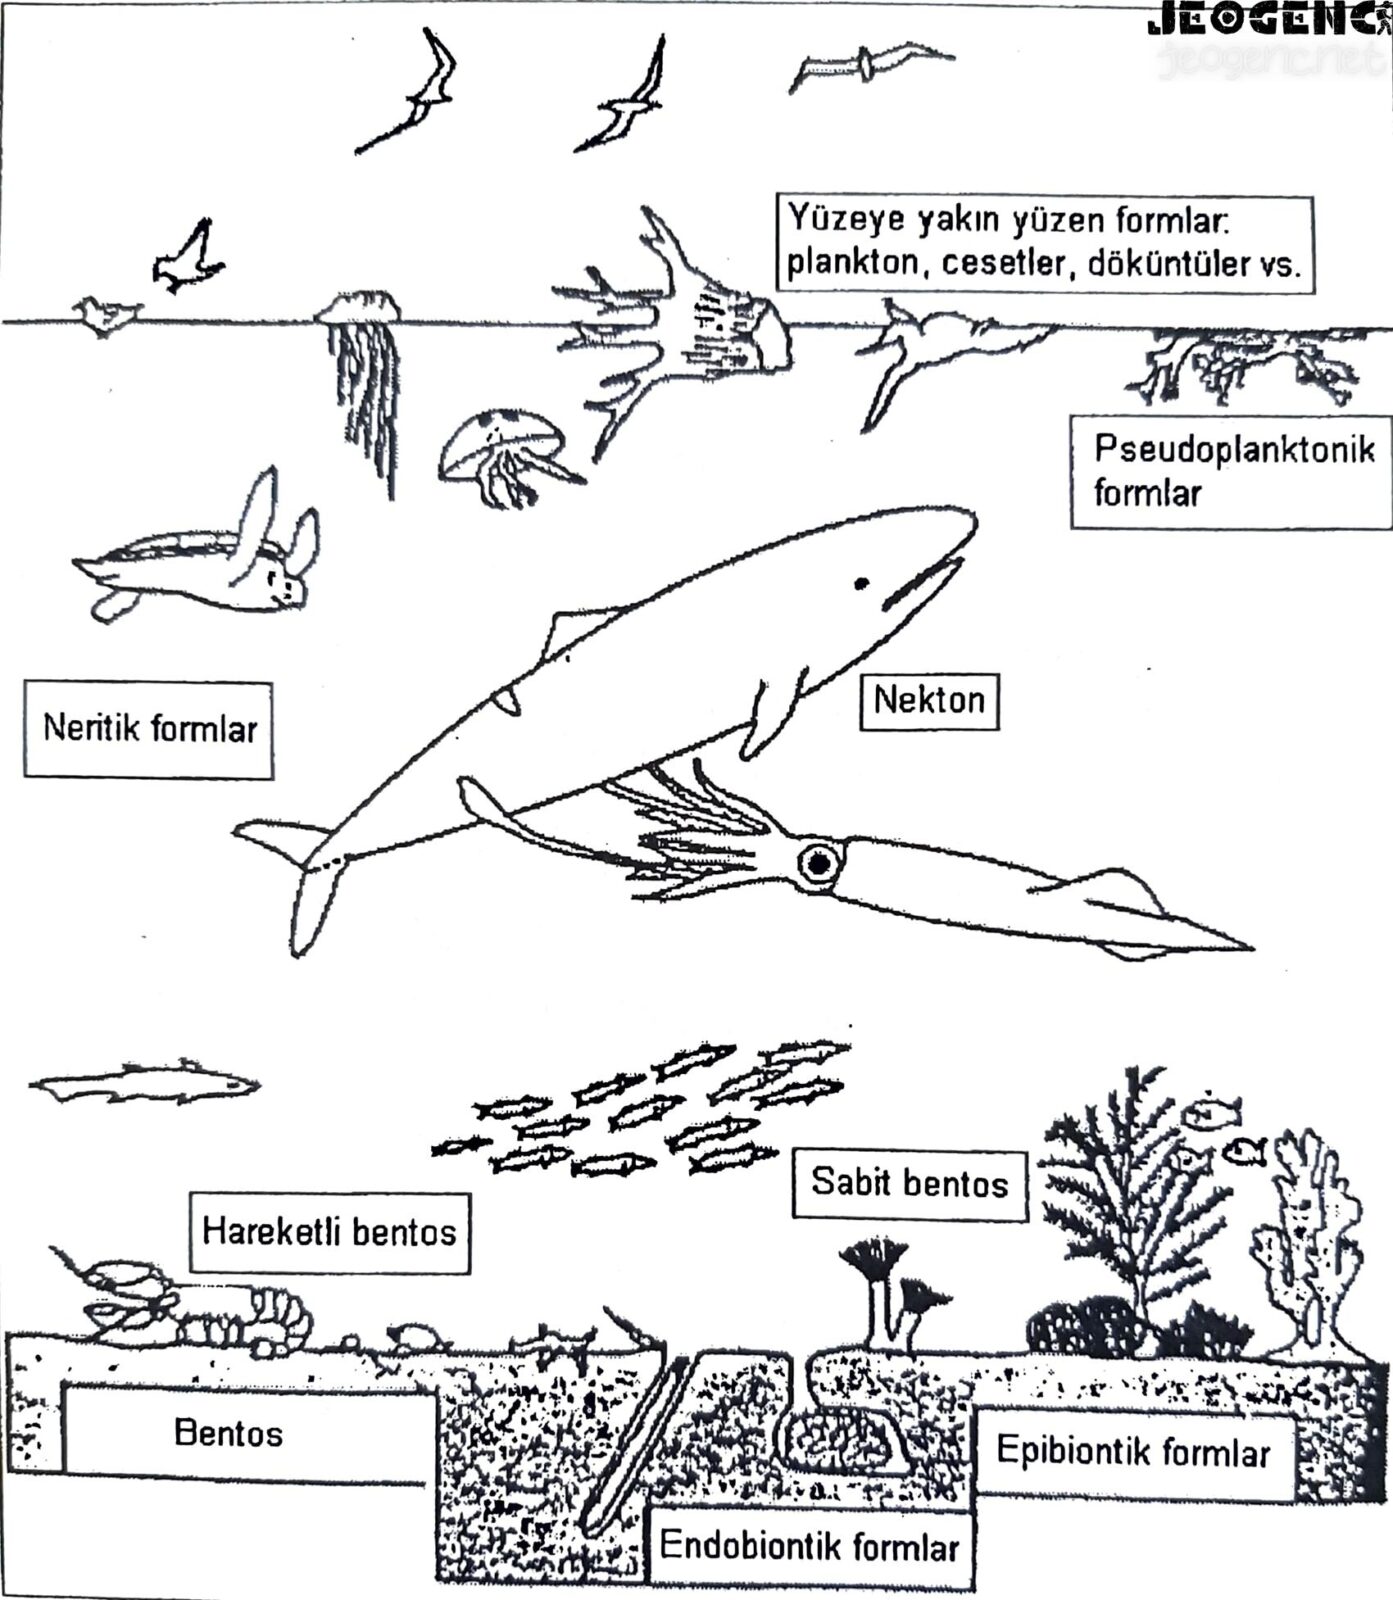 Denizel organizmaların yaşam tarzlarına göre sınıflandırılması.